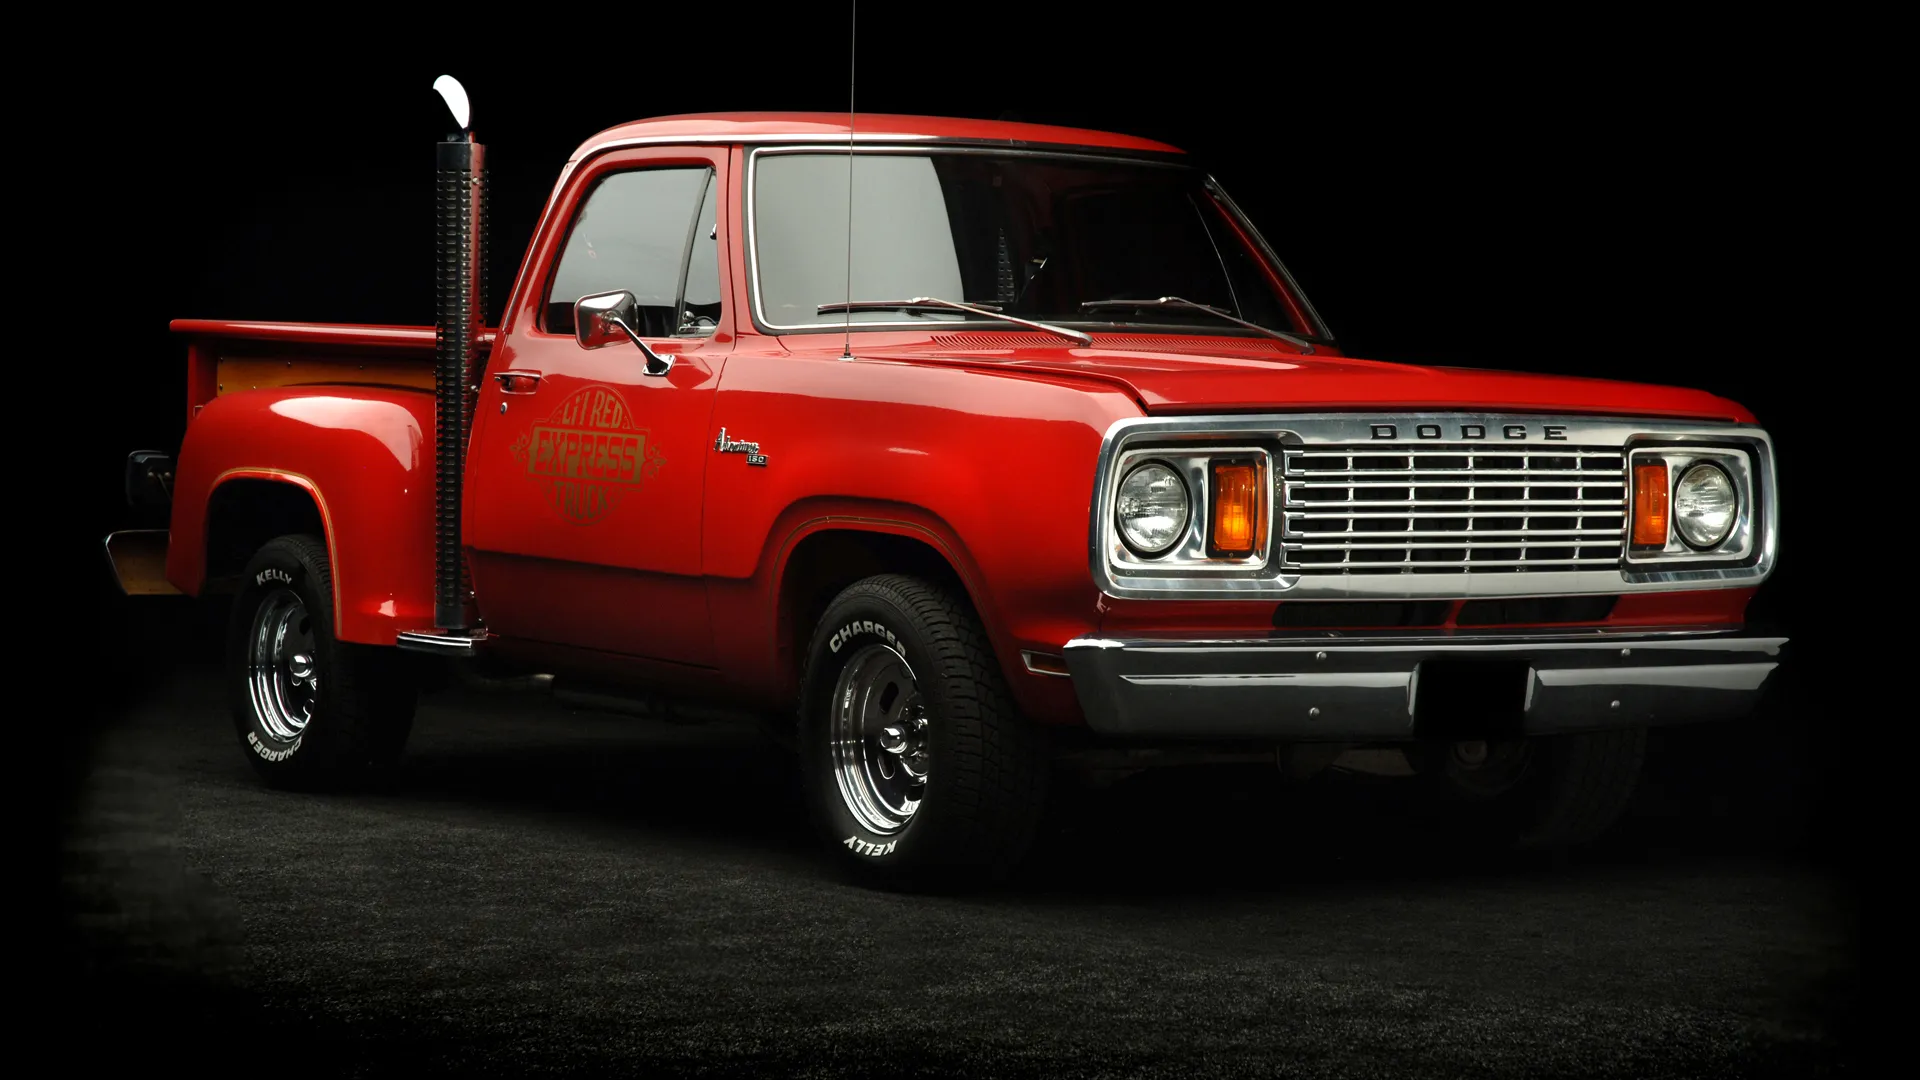 La Dodge Li’l Red Express del 78 es el origen de los pick-up deportivos